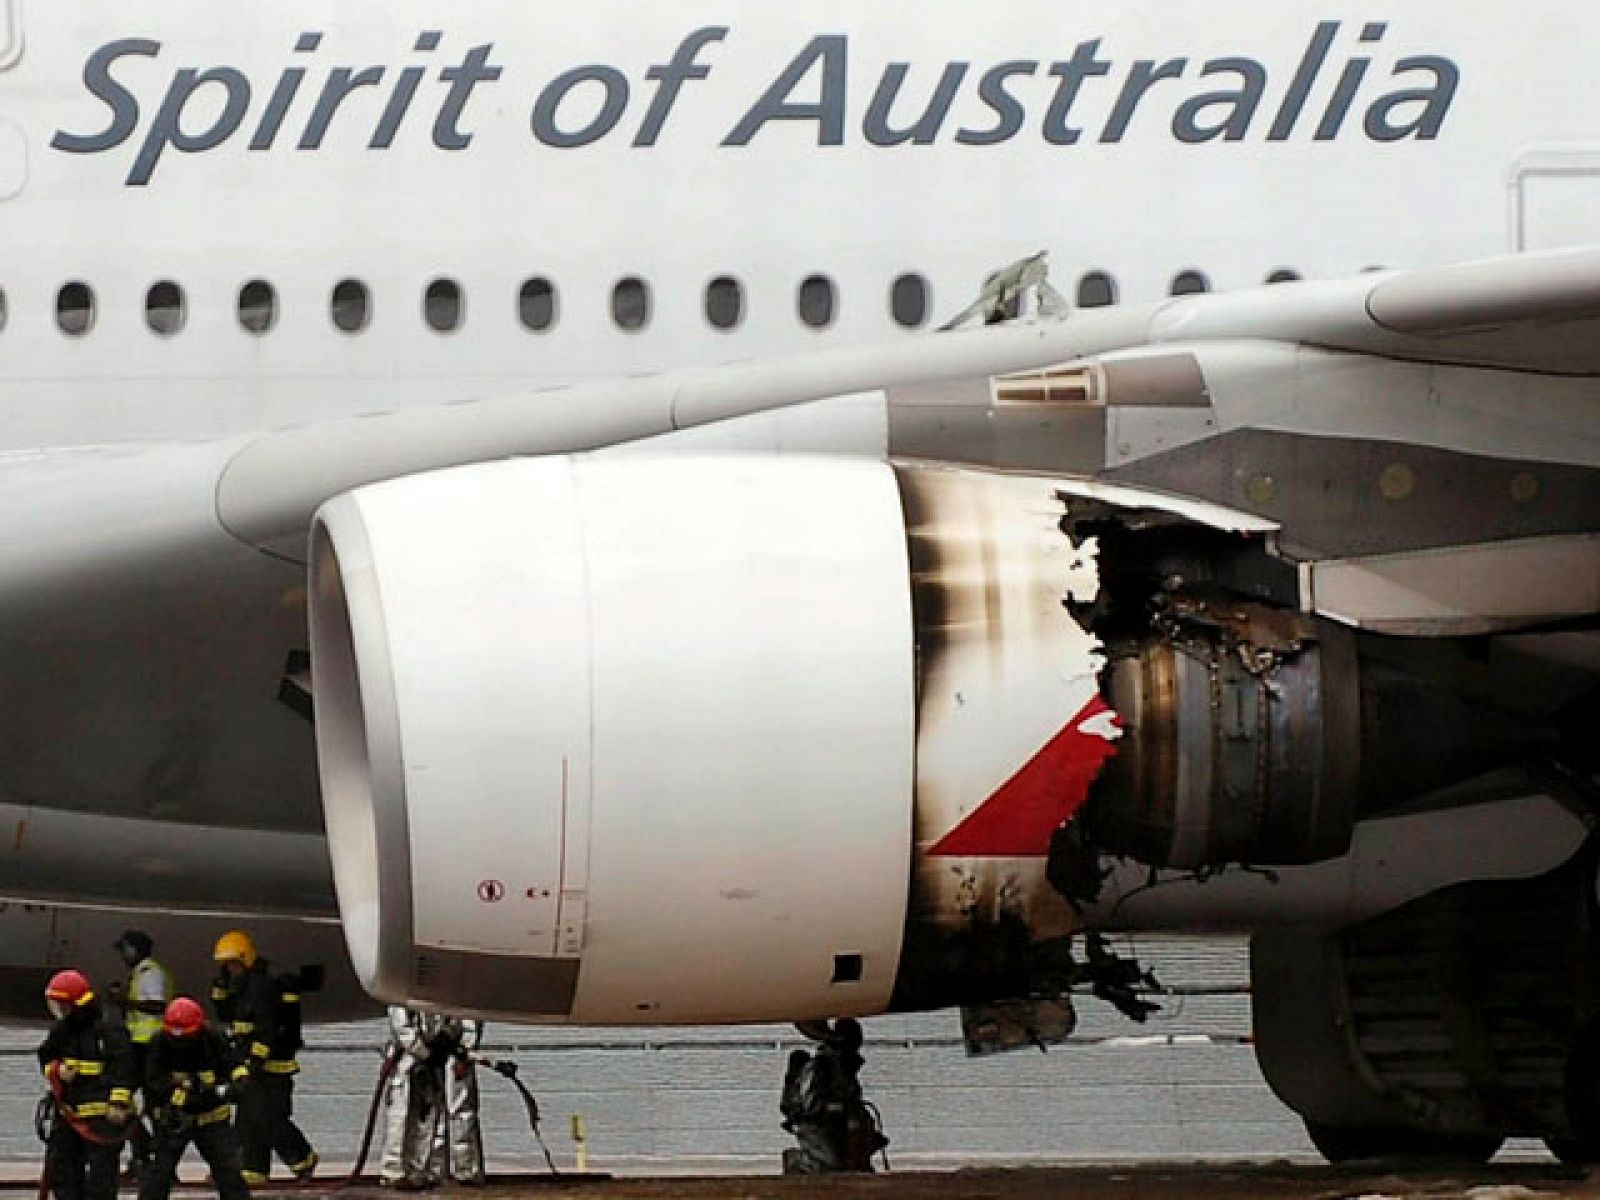 Un Airbus 380 de la compañía australiana Qantas ha aterrizado de emergencia en Singapur debido a un fallo en uno de sus motores. Ningún pasajero ha resultado herido.